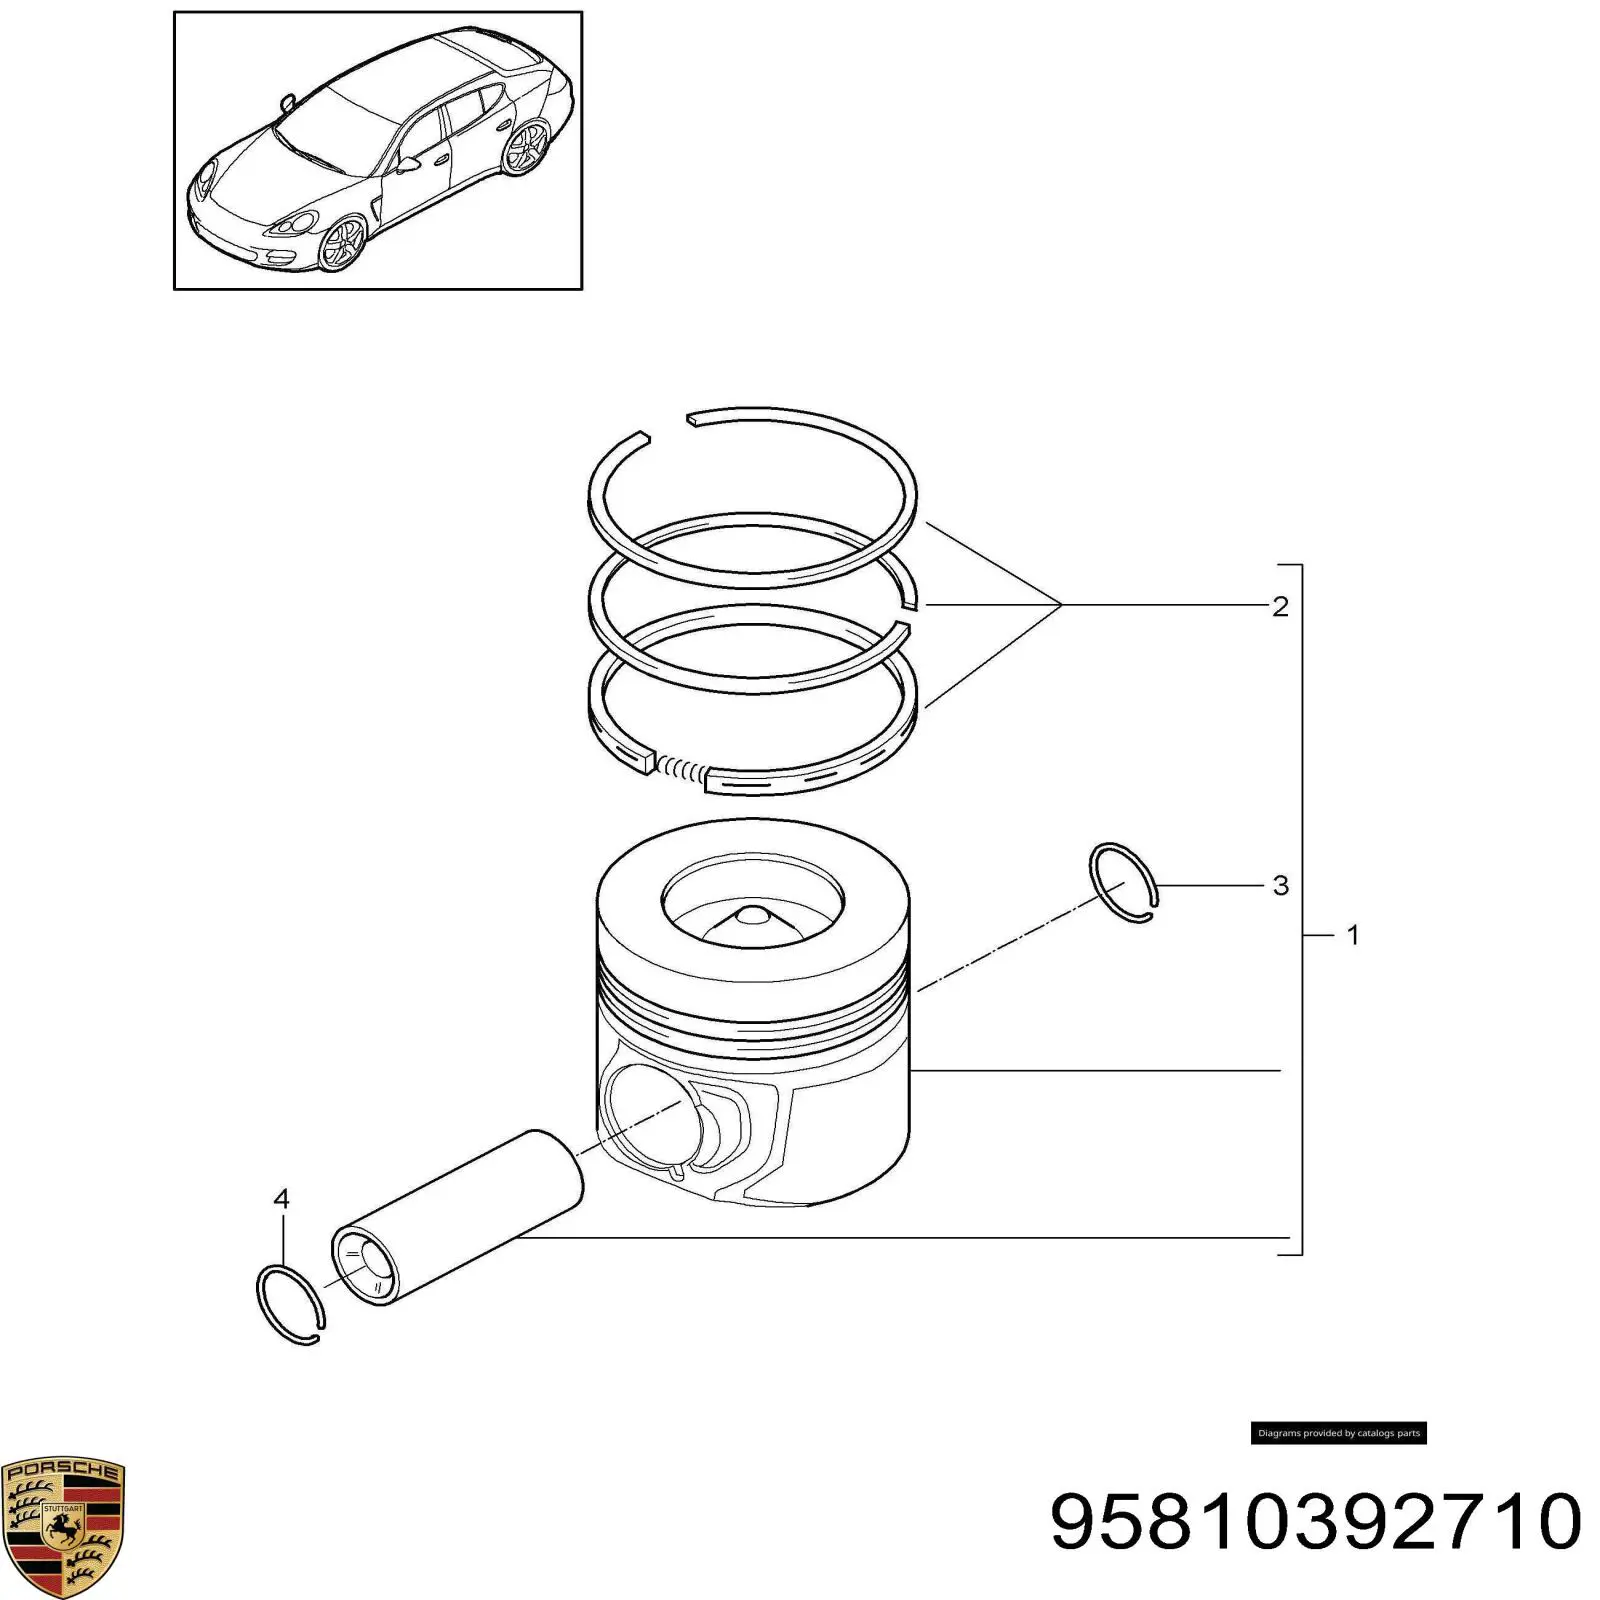 95810392710 Porsche anéis do pistão para 1 cilindro, std.